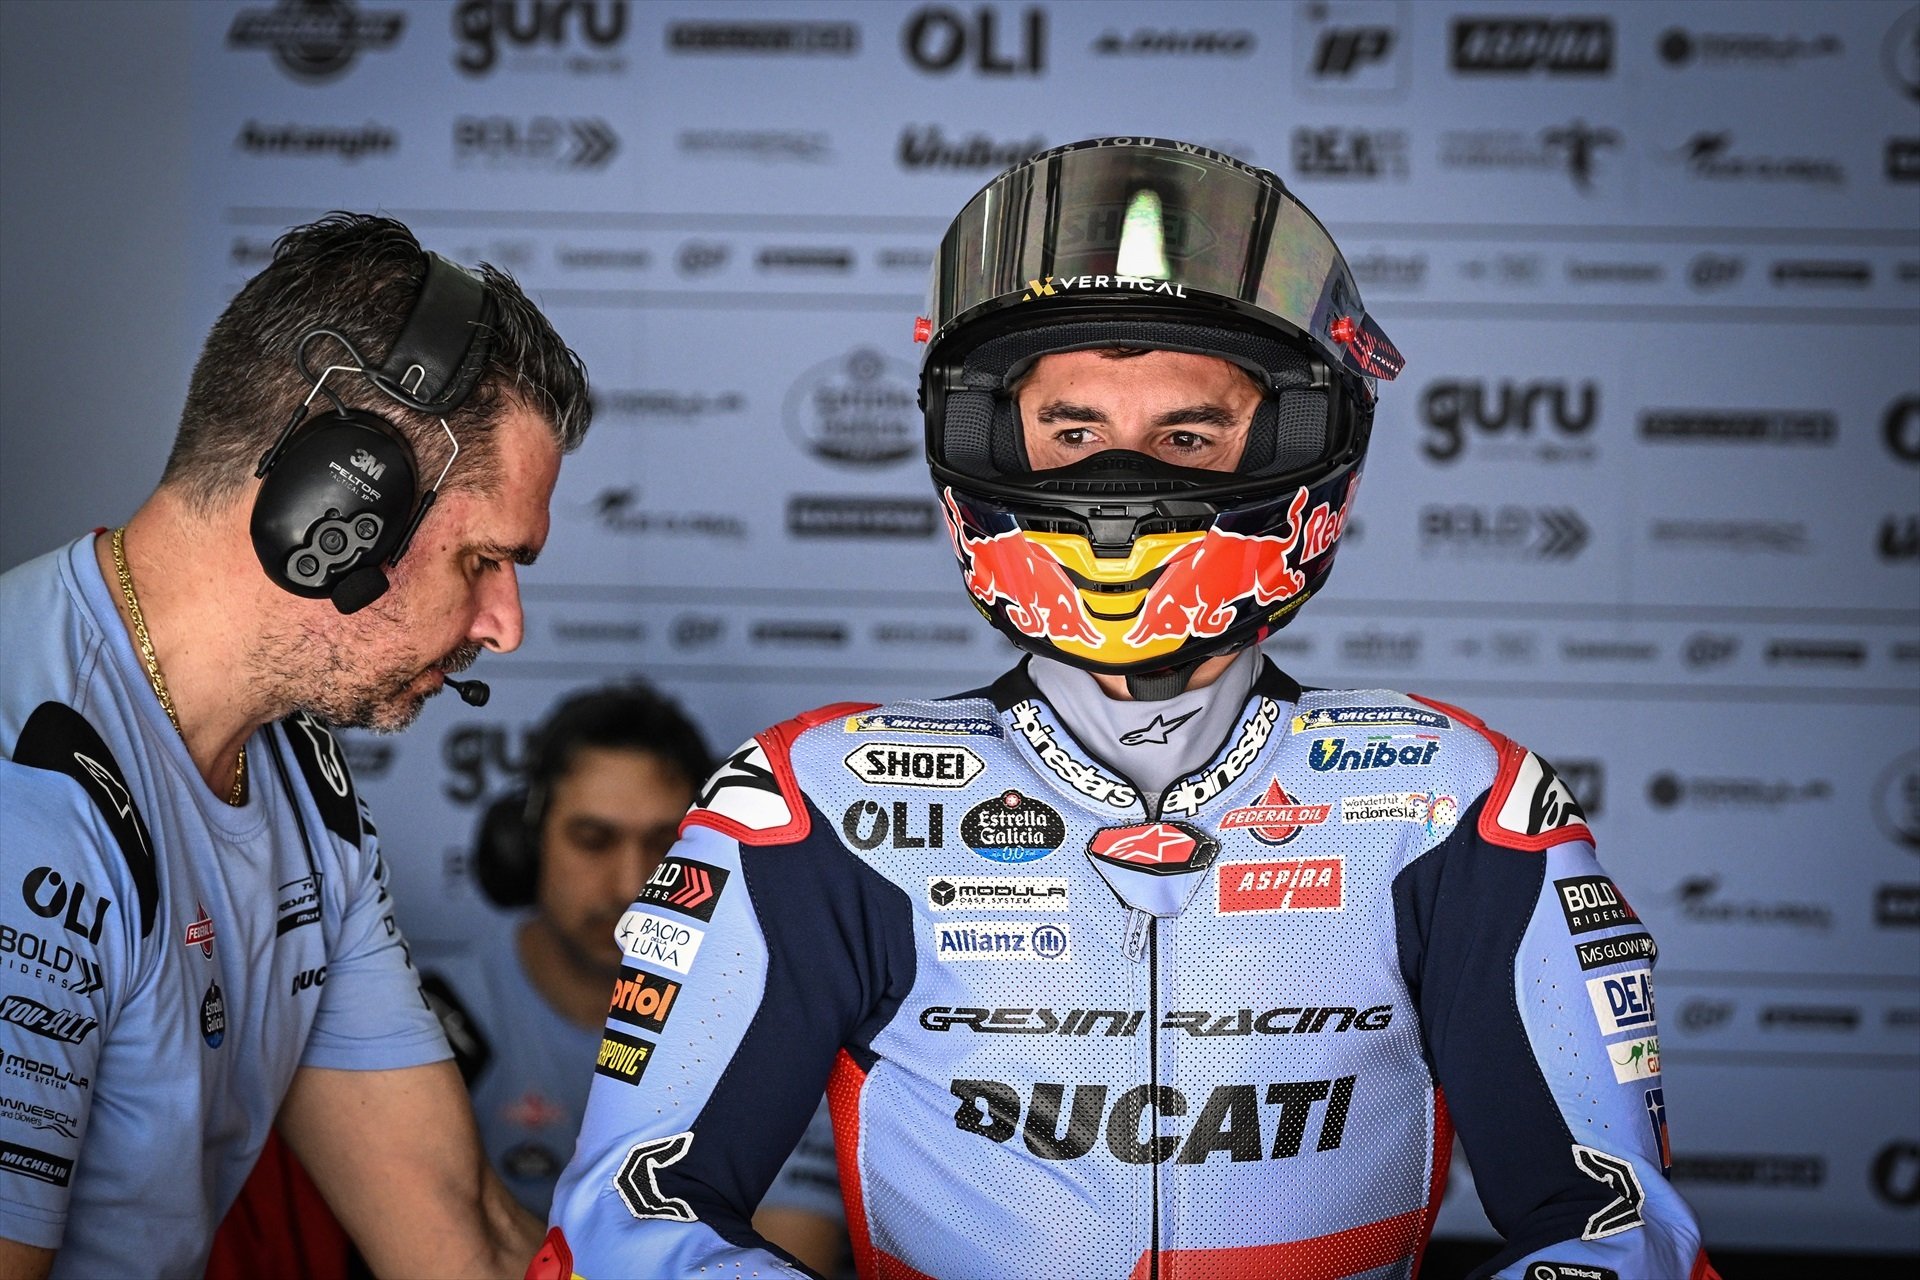 Marc Márquez es el hazmerreír de Ducati, ni campeón, ni estrella